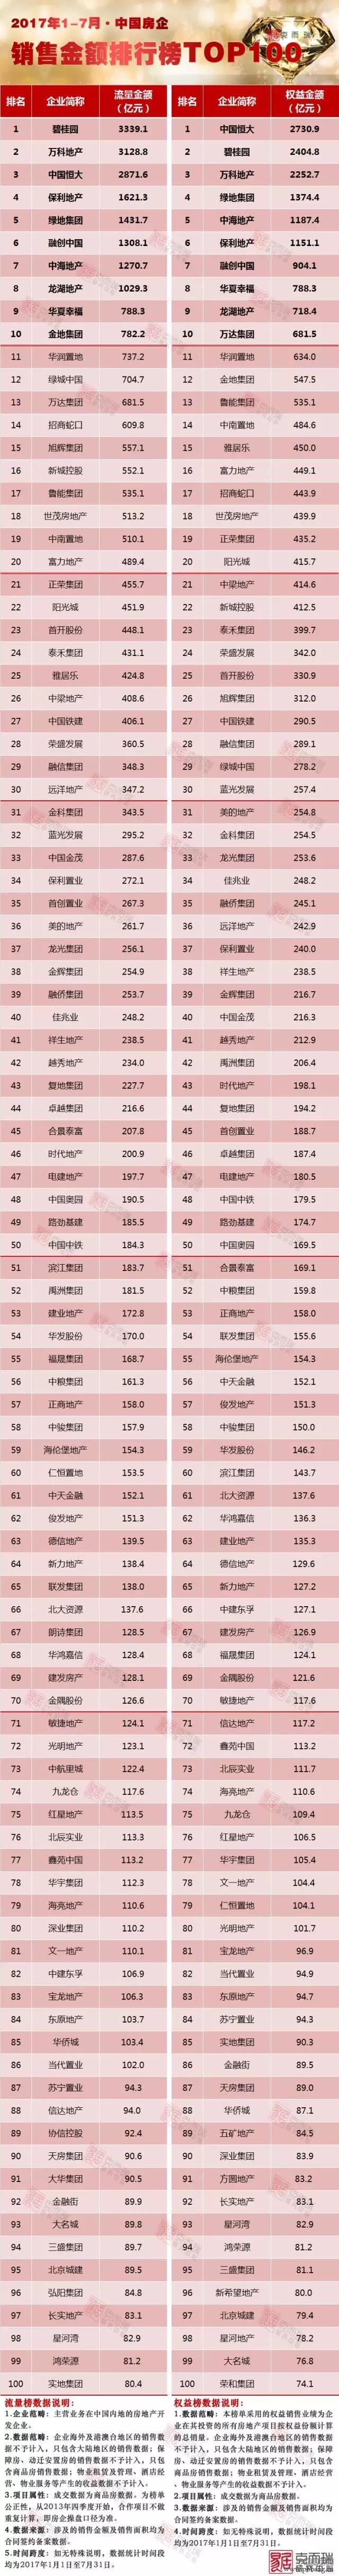 2017年1-7月中国房地产企业销售排行榜TOP100